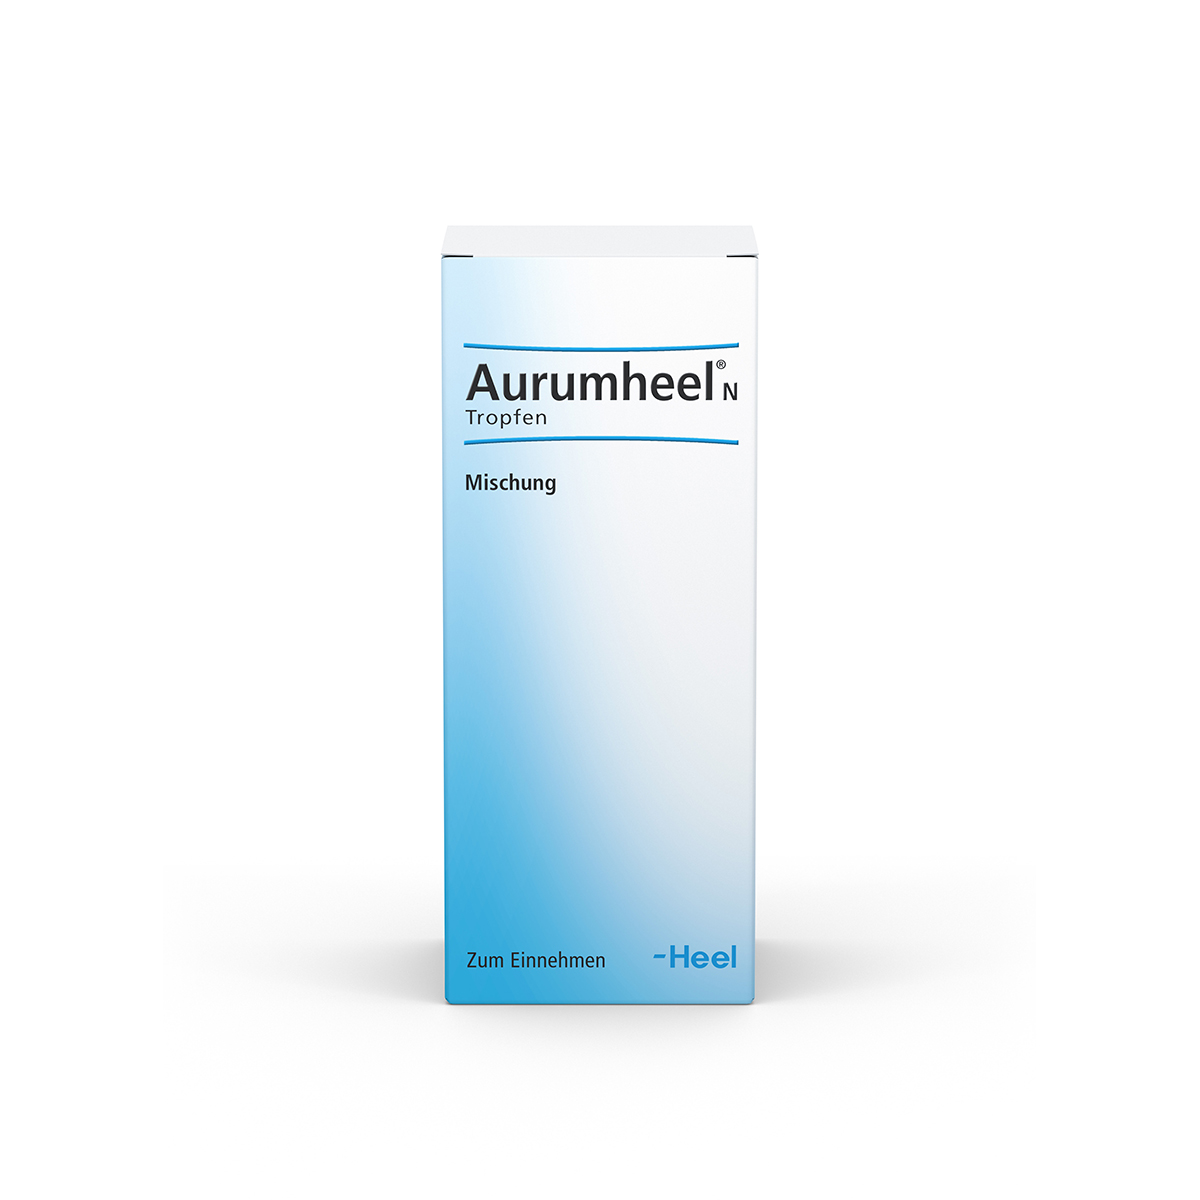 Aurumheel® N Tropfen Tropfen